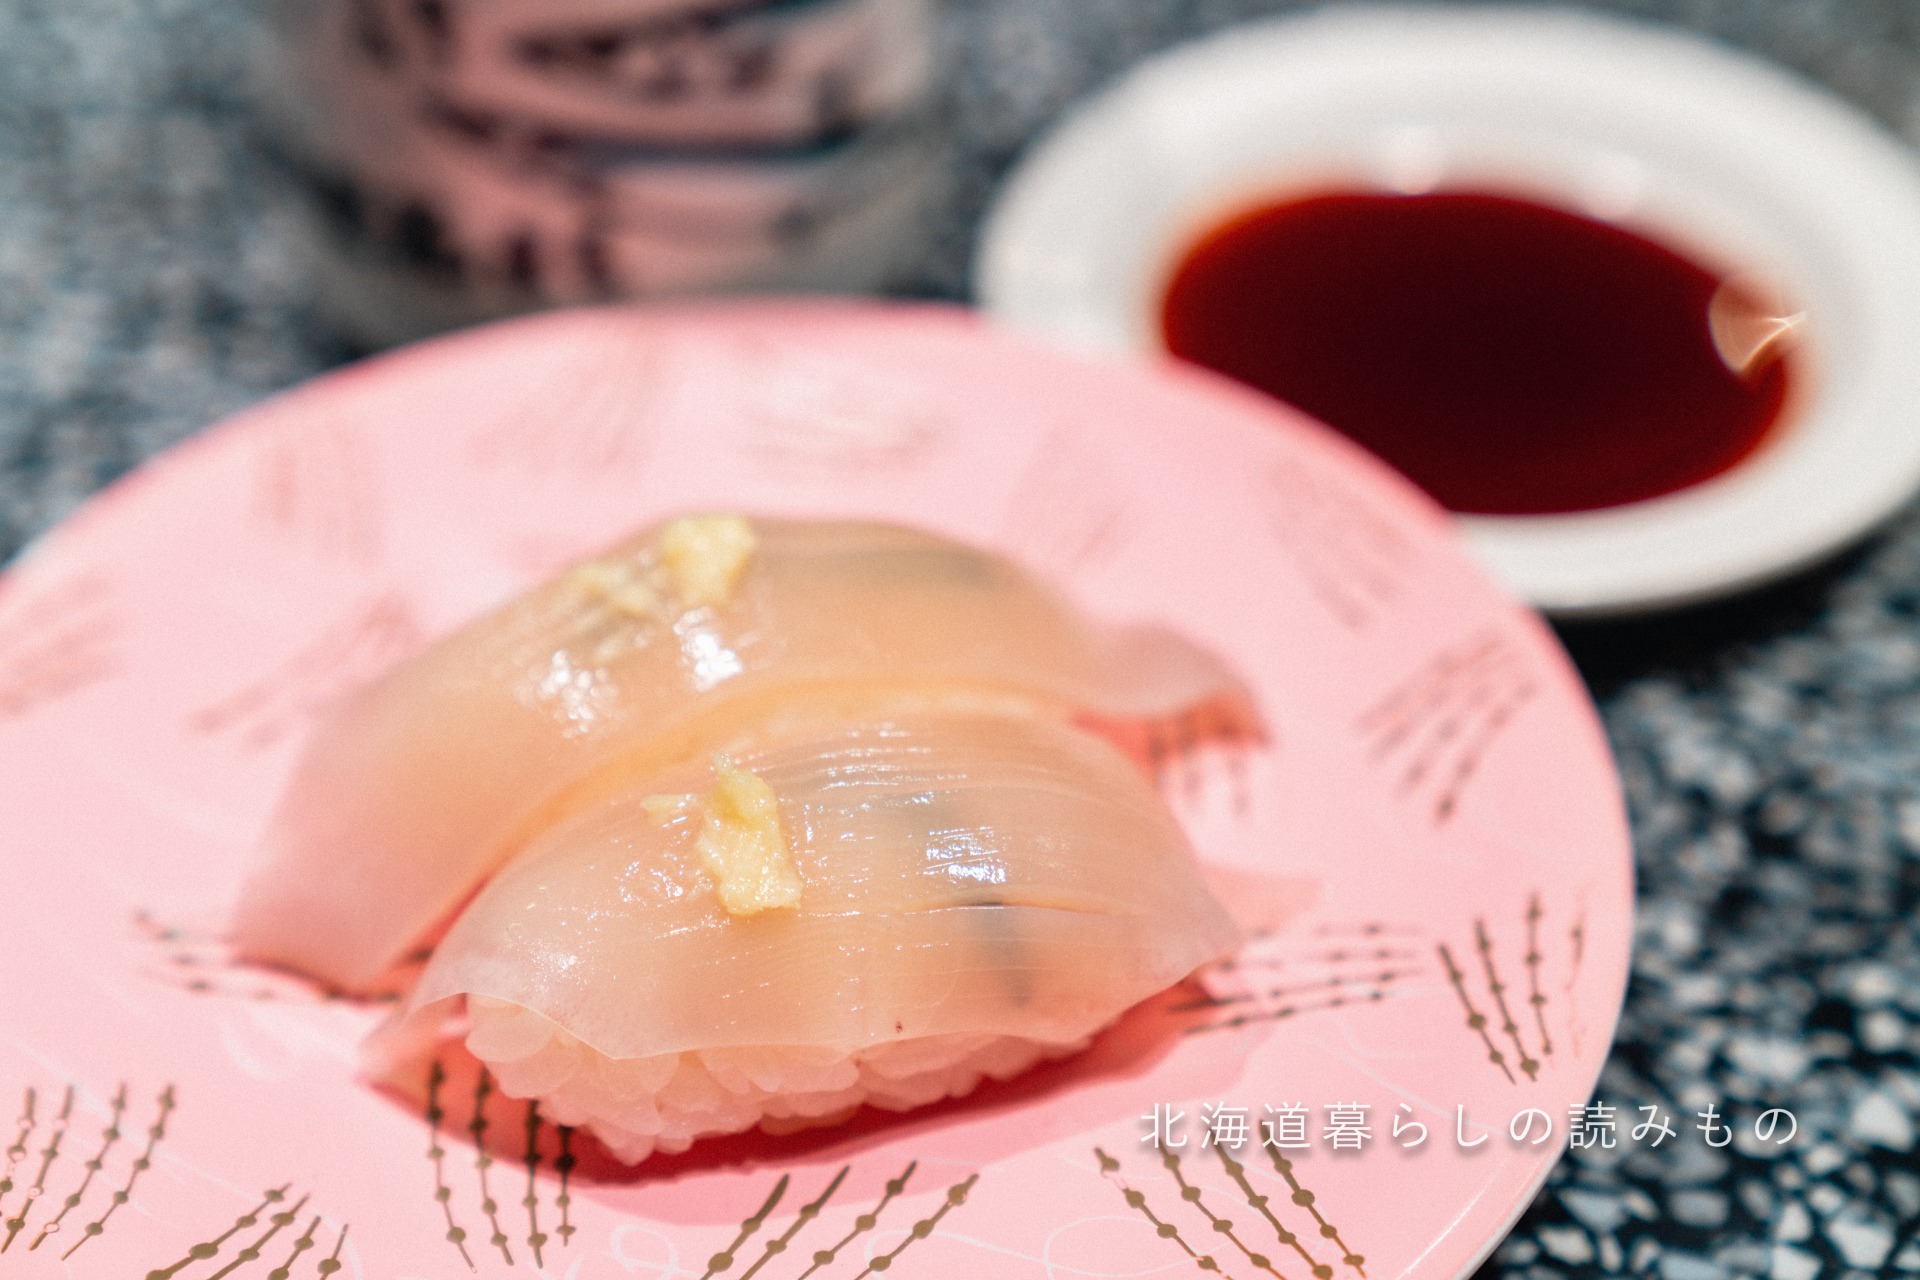 迴轉壽司根室花丸的菜單上的「Squid Fin」